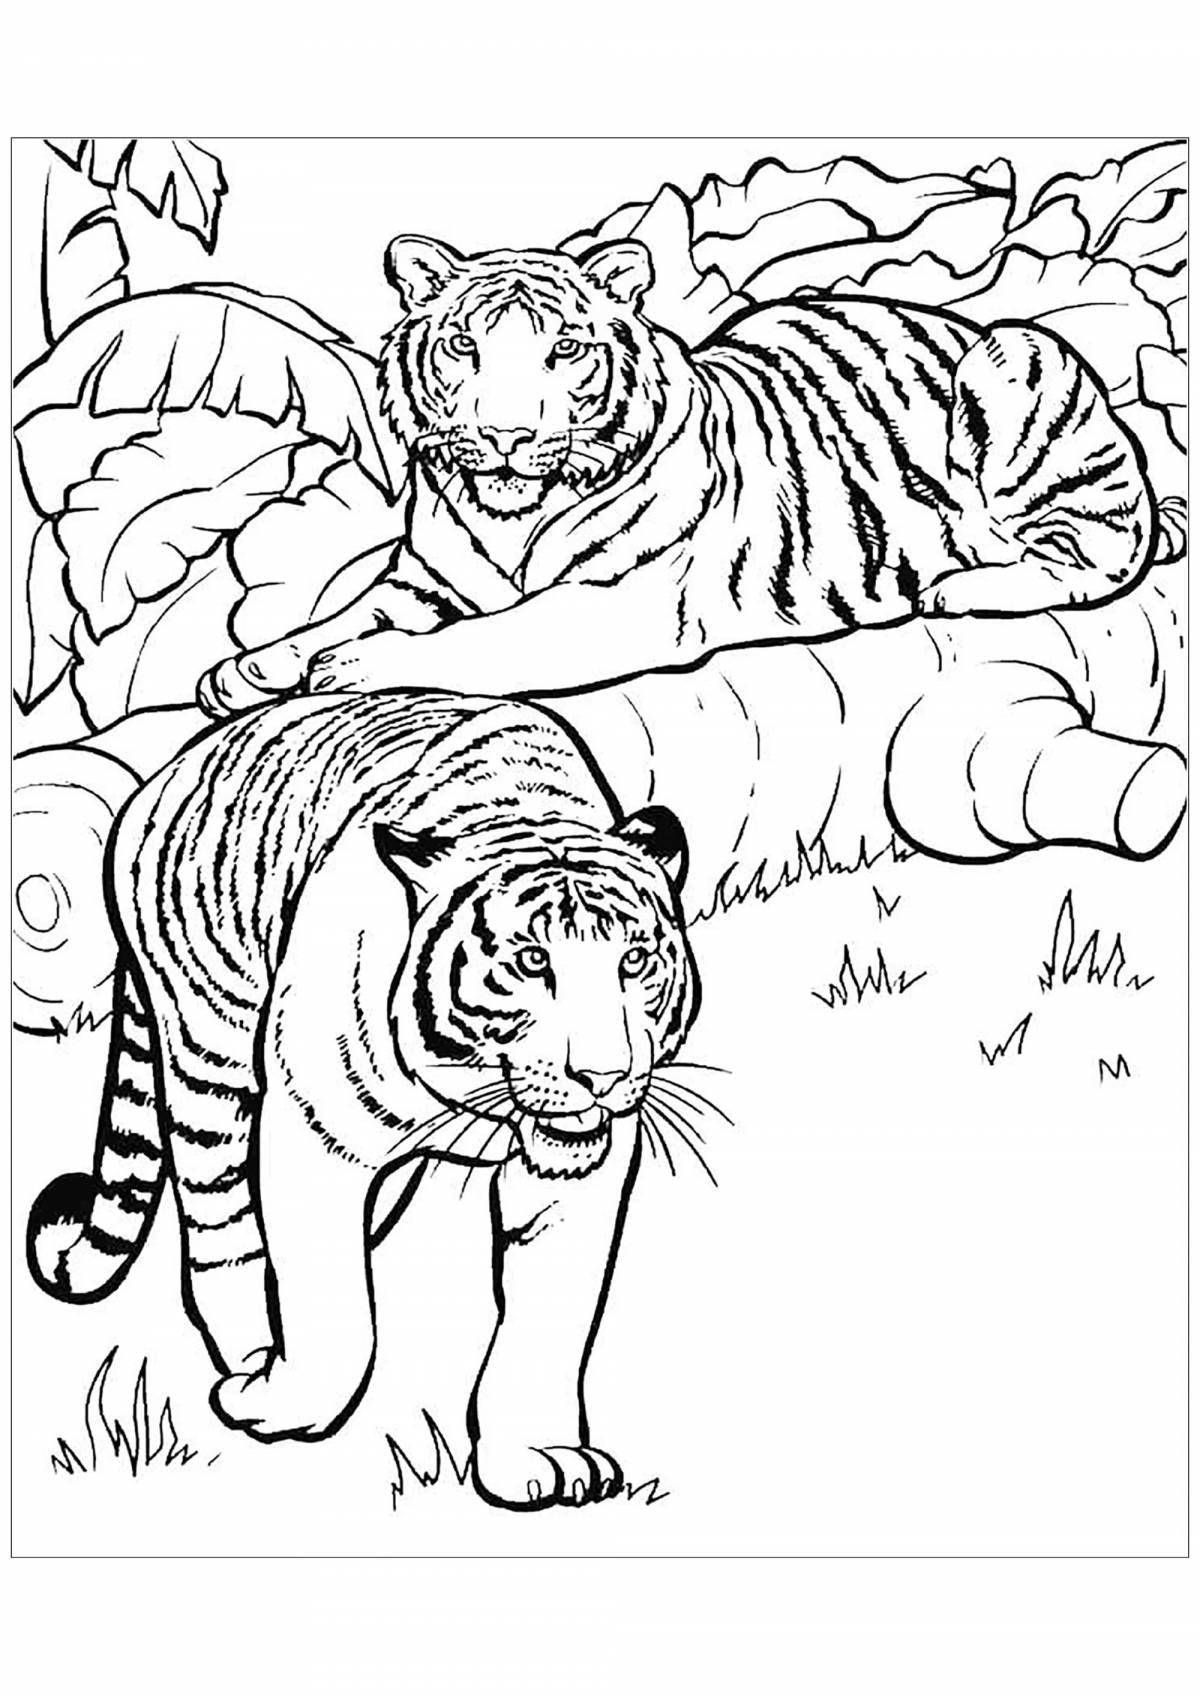 Impressive Ussuri tiger coloring page